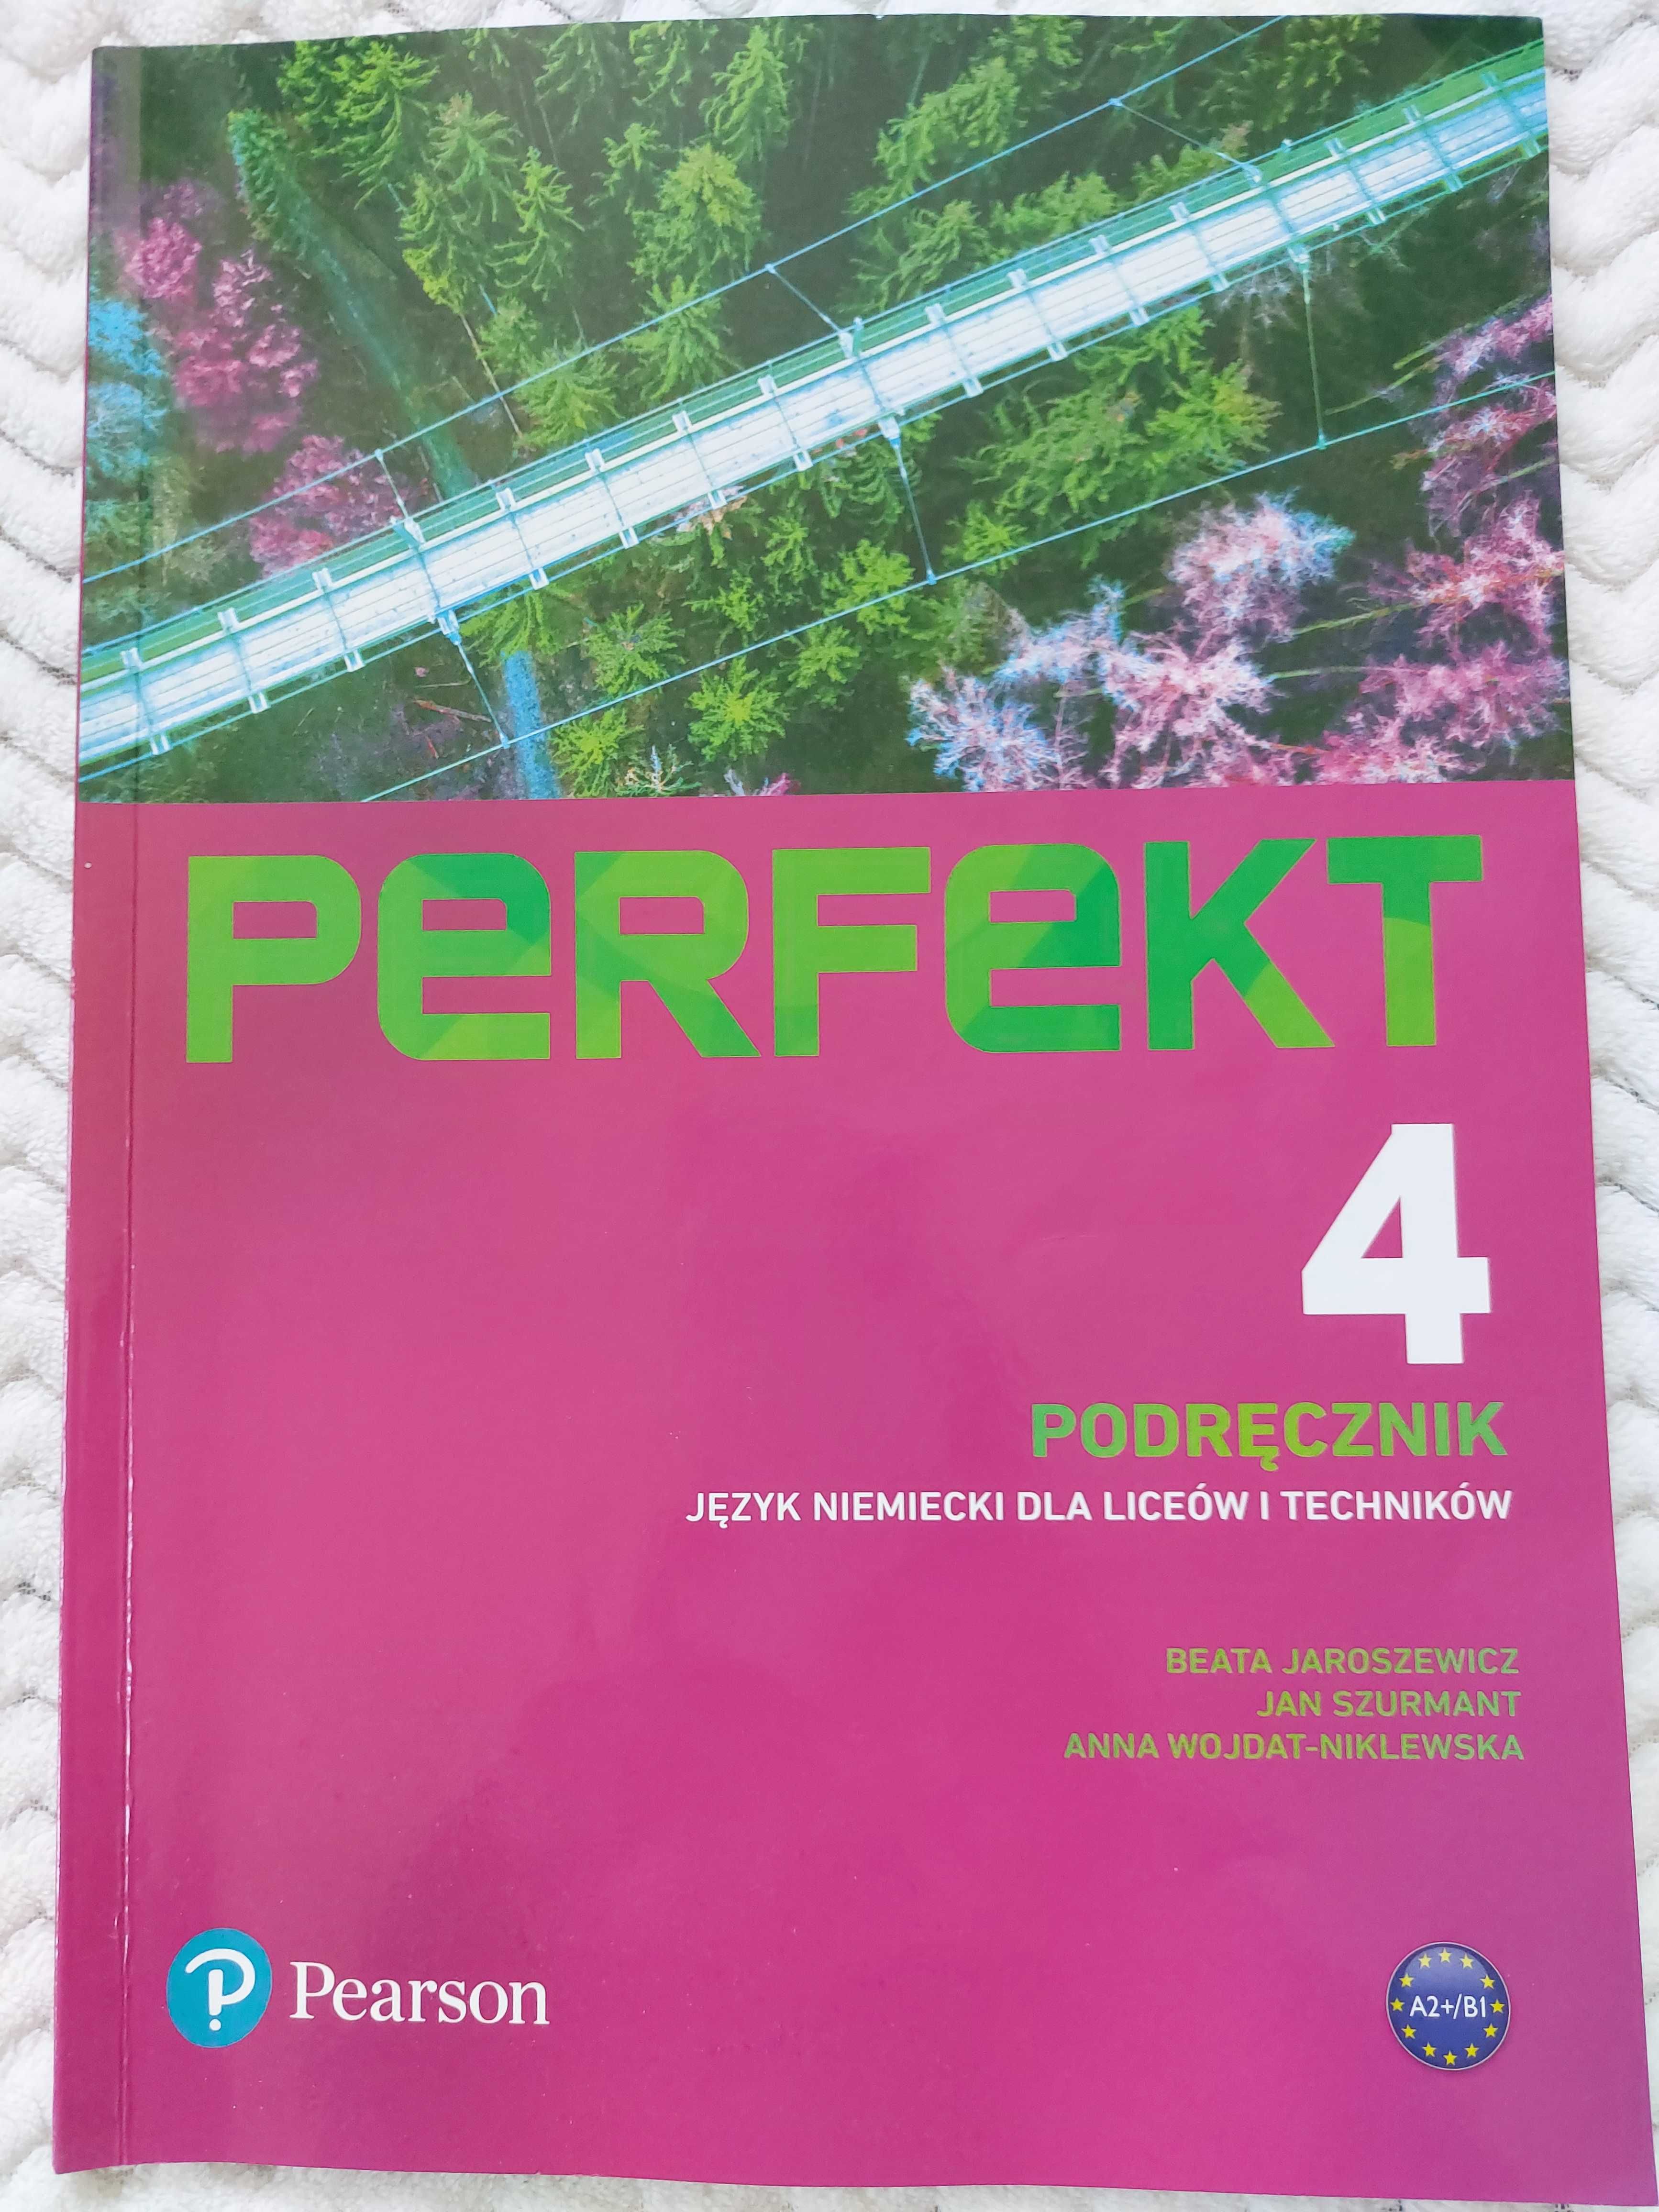 PERFEKT 4 podręcznik do języka niemieckiego